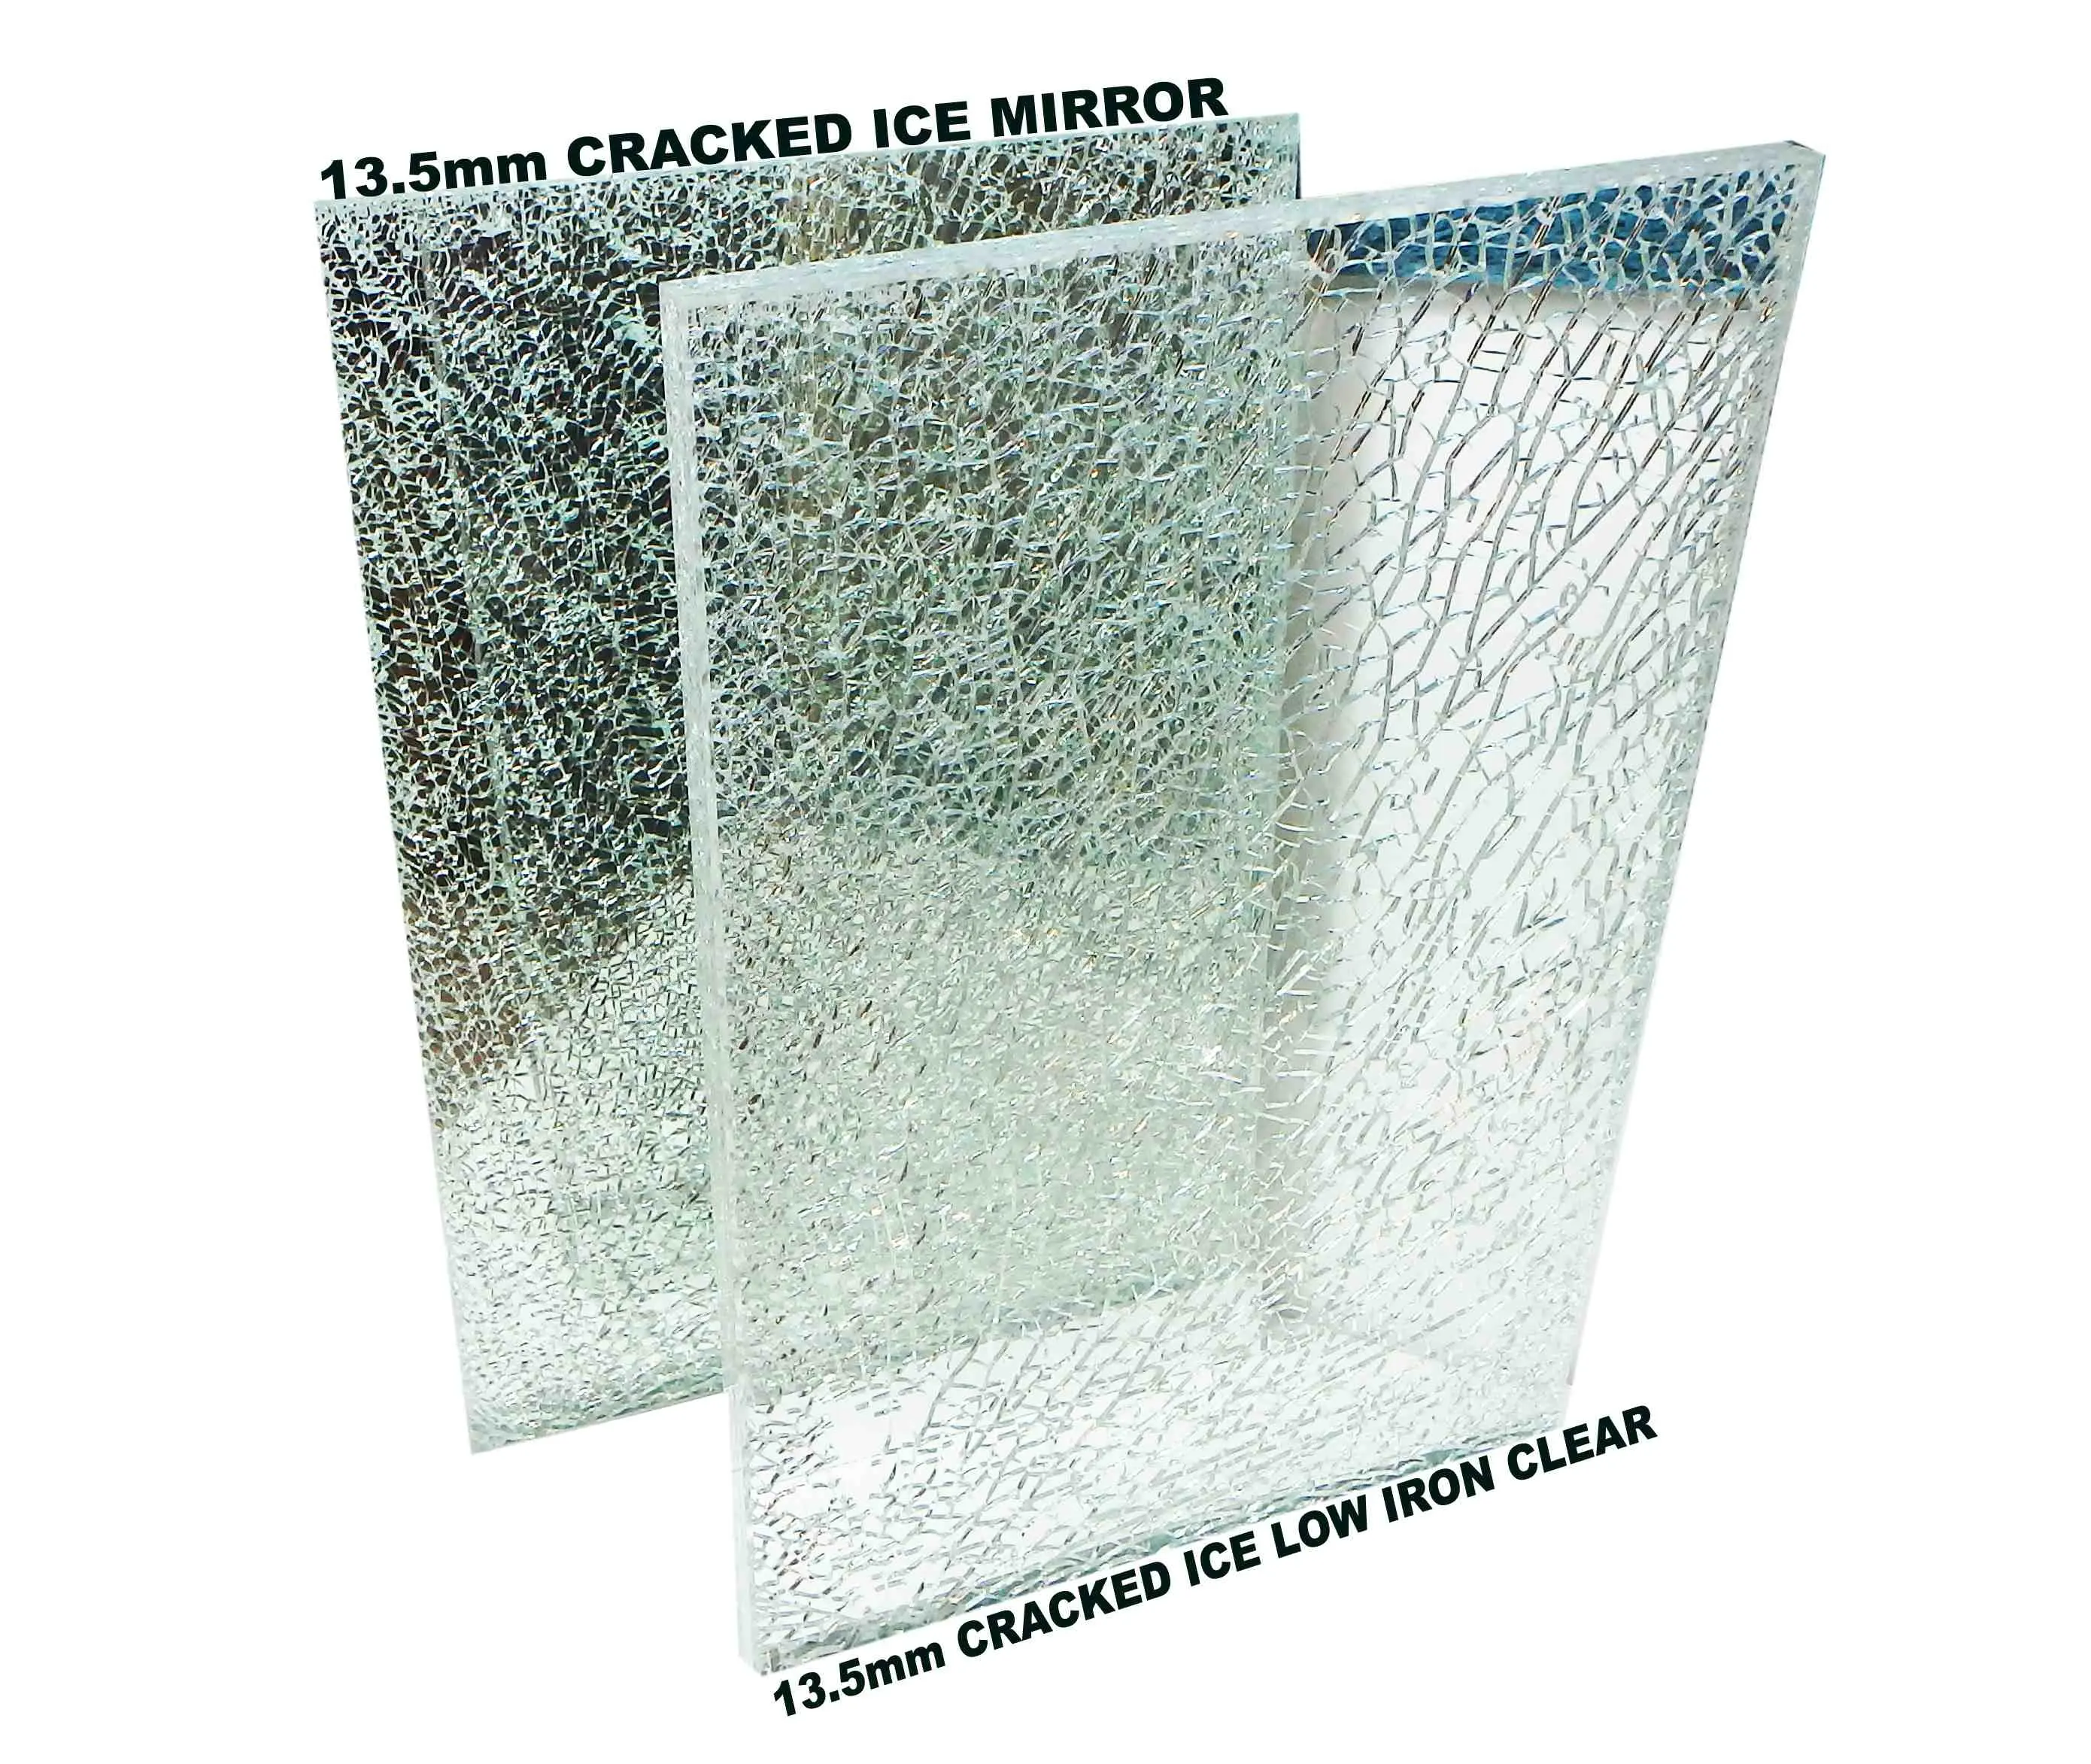 cracked ice decorative glass factory Ice Cracked Toughened Laminated Glass For Kitchen Splashback